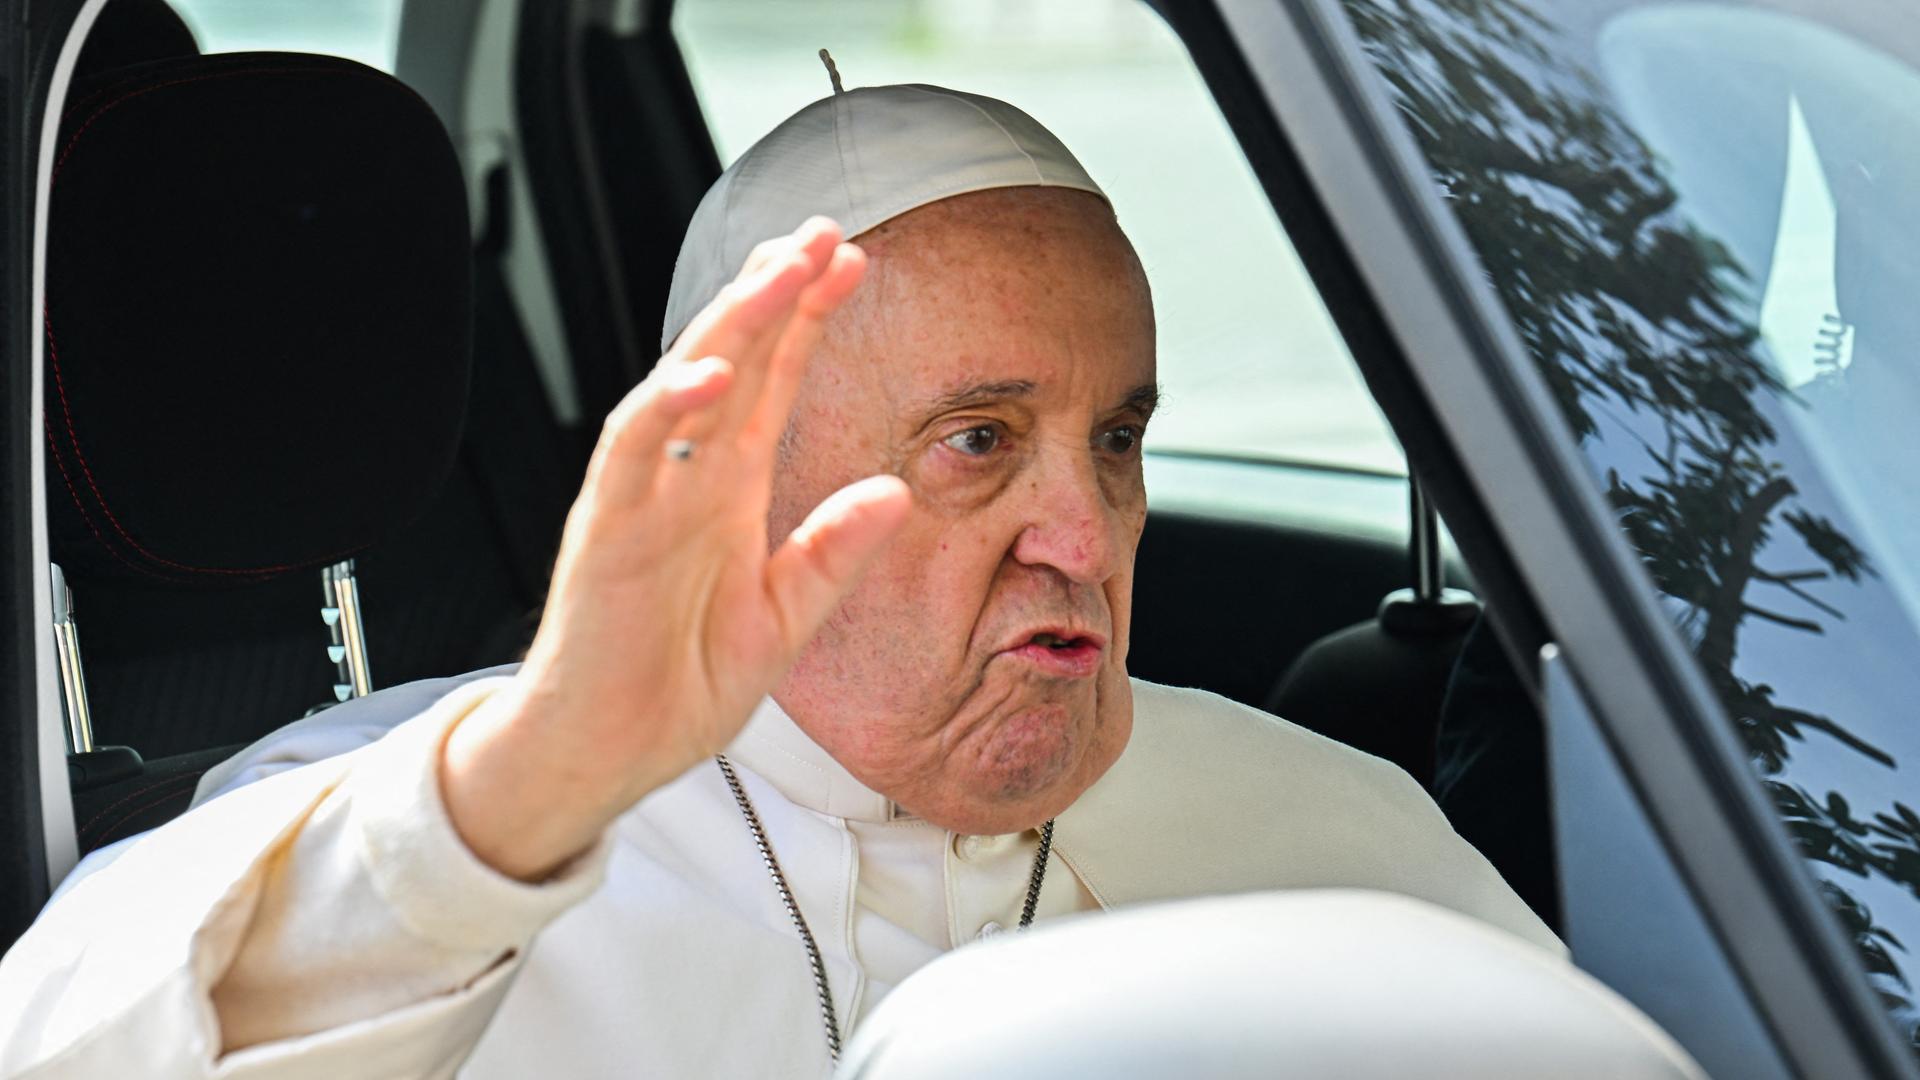 Papst Franziskus verlässt die Gemelli-Klinik, er winkt aus dem Auto-Fenster. (Photo by Filippo MONTEFORTE / AFP)